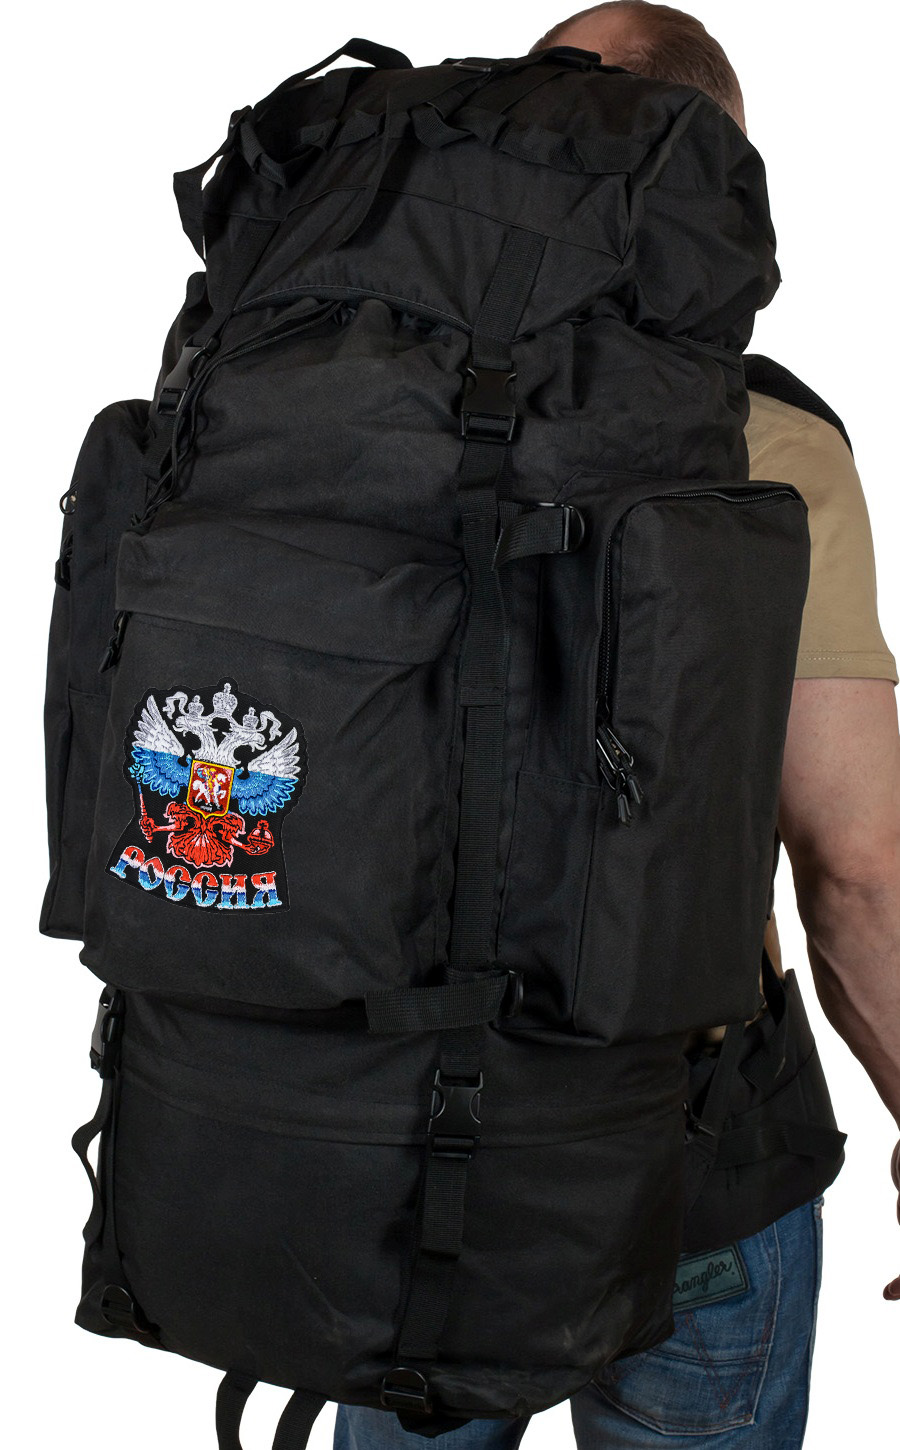 Многодневный тактический рюкзак Max Fuchs с эмблемой "Россия"  